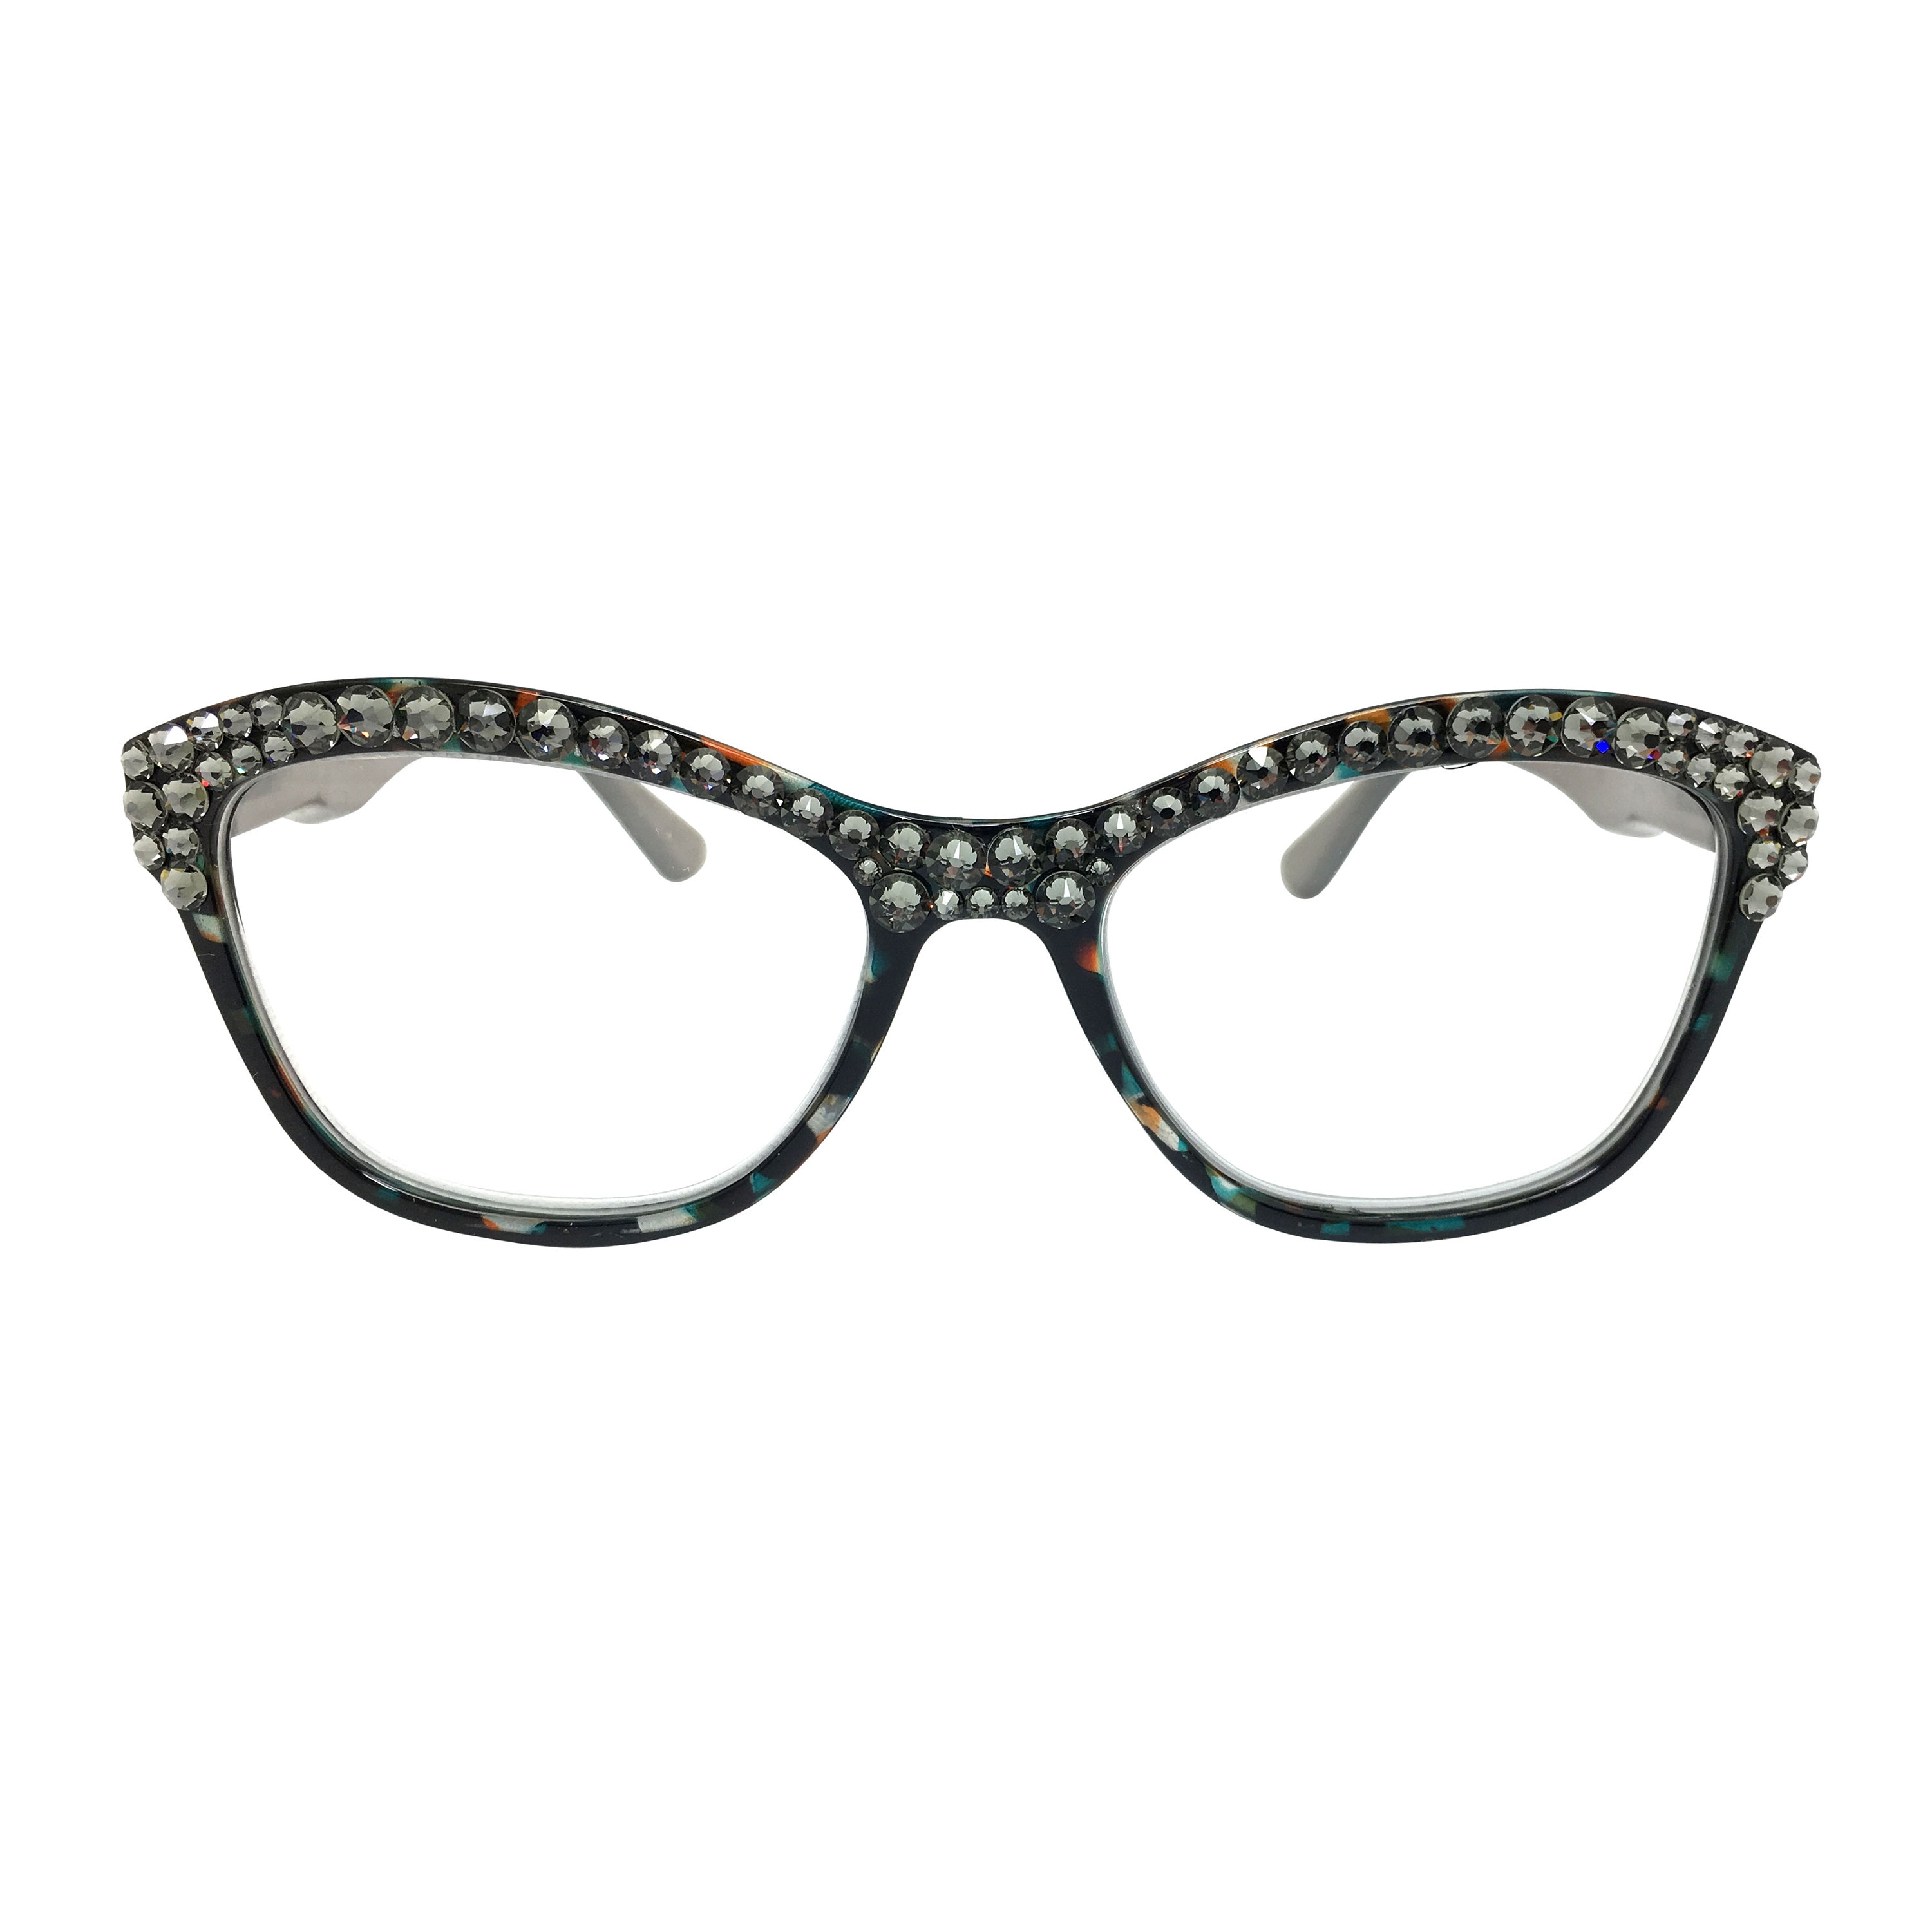 Khaki Green Eyeglasses 4.50 Spring Hinges Full Lens Cheaters Accessoires Zonnebrillen & Eyewear Leesbrillen Reading Glasses 